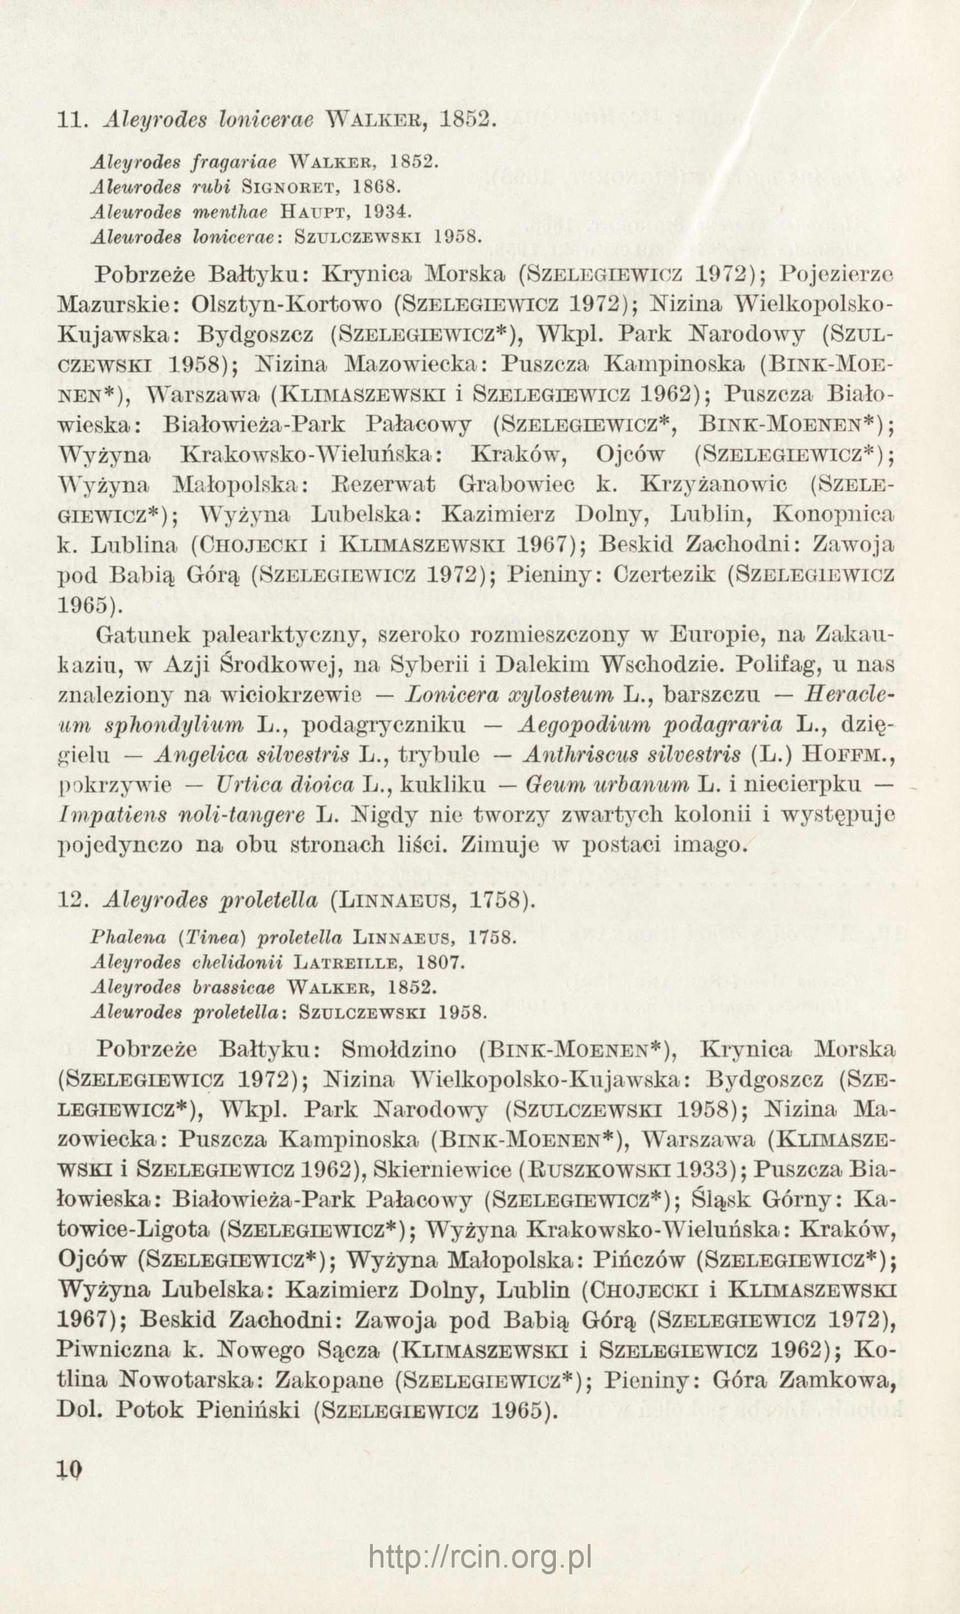 Park N arodow y (Szulczewski 1958); N izina M azowiecka: Puszcza K am pinoska (B in k -Mo e n en *), W arszawa (K lim a szew sk i i S z e le g ie w ic z 1962); Puszcza B iałowieska: Białowieża-Park